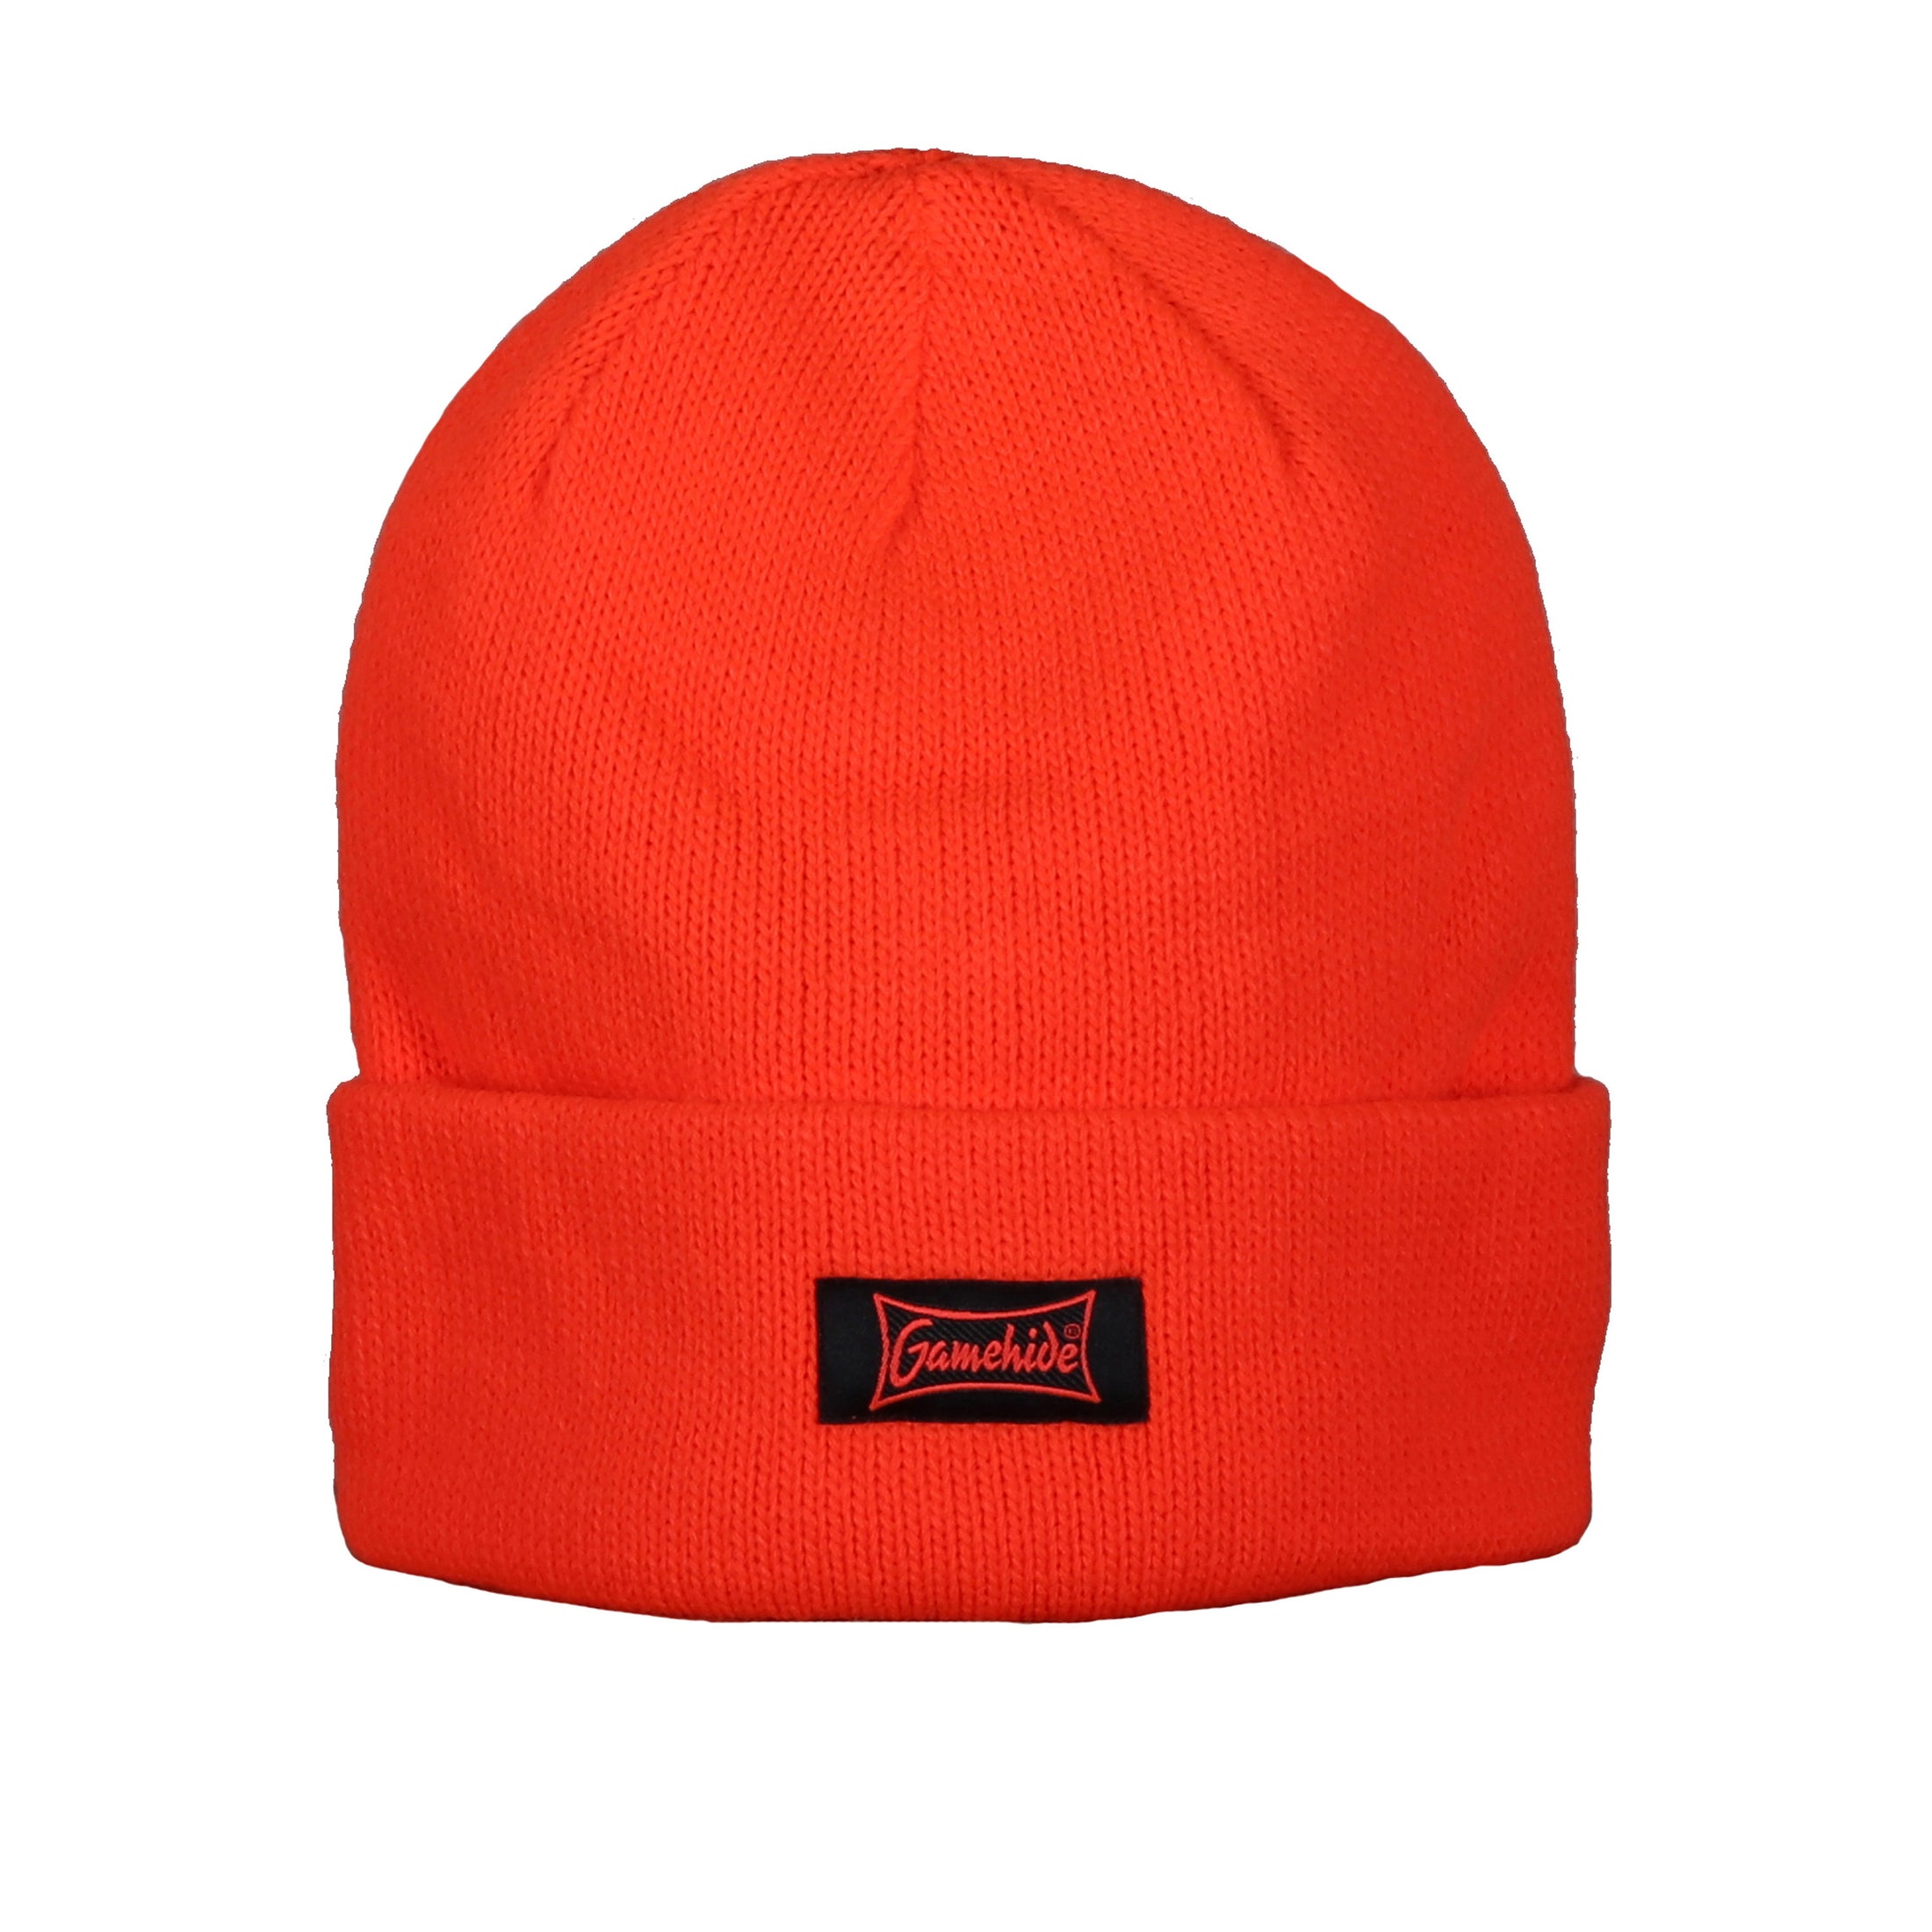 gamehide knit hat (blaze orange)